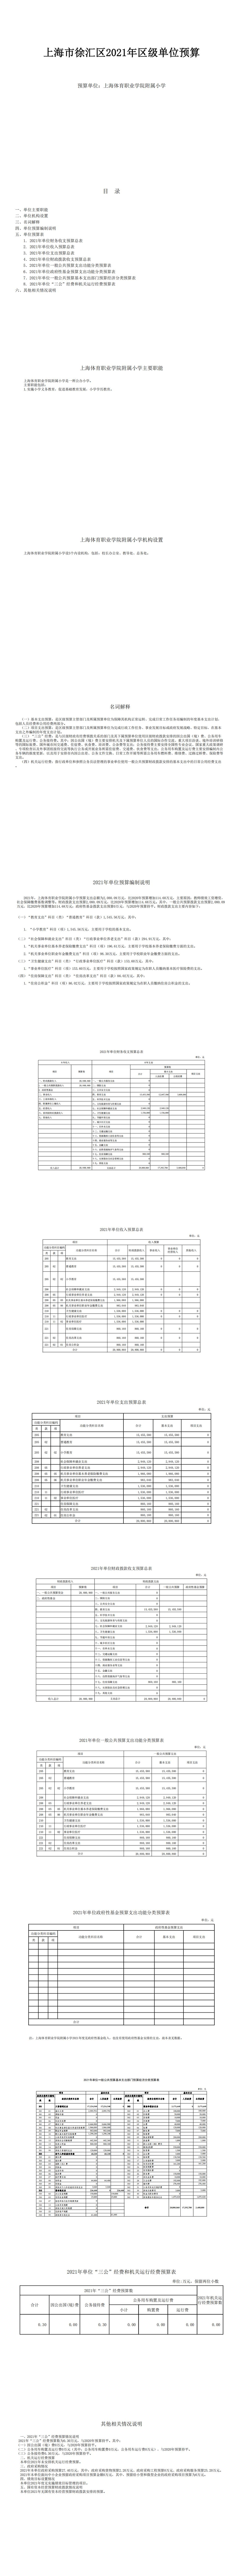 上海体育职业学院附属小学2021年度单位预算_0.jpg